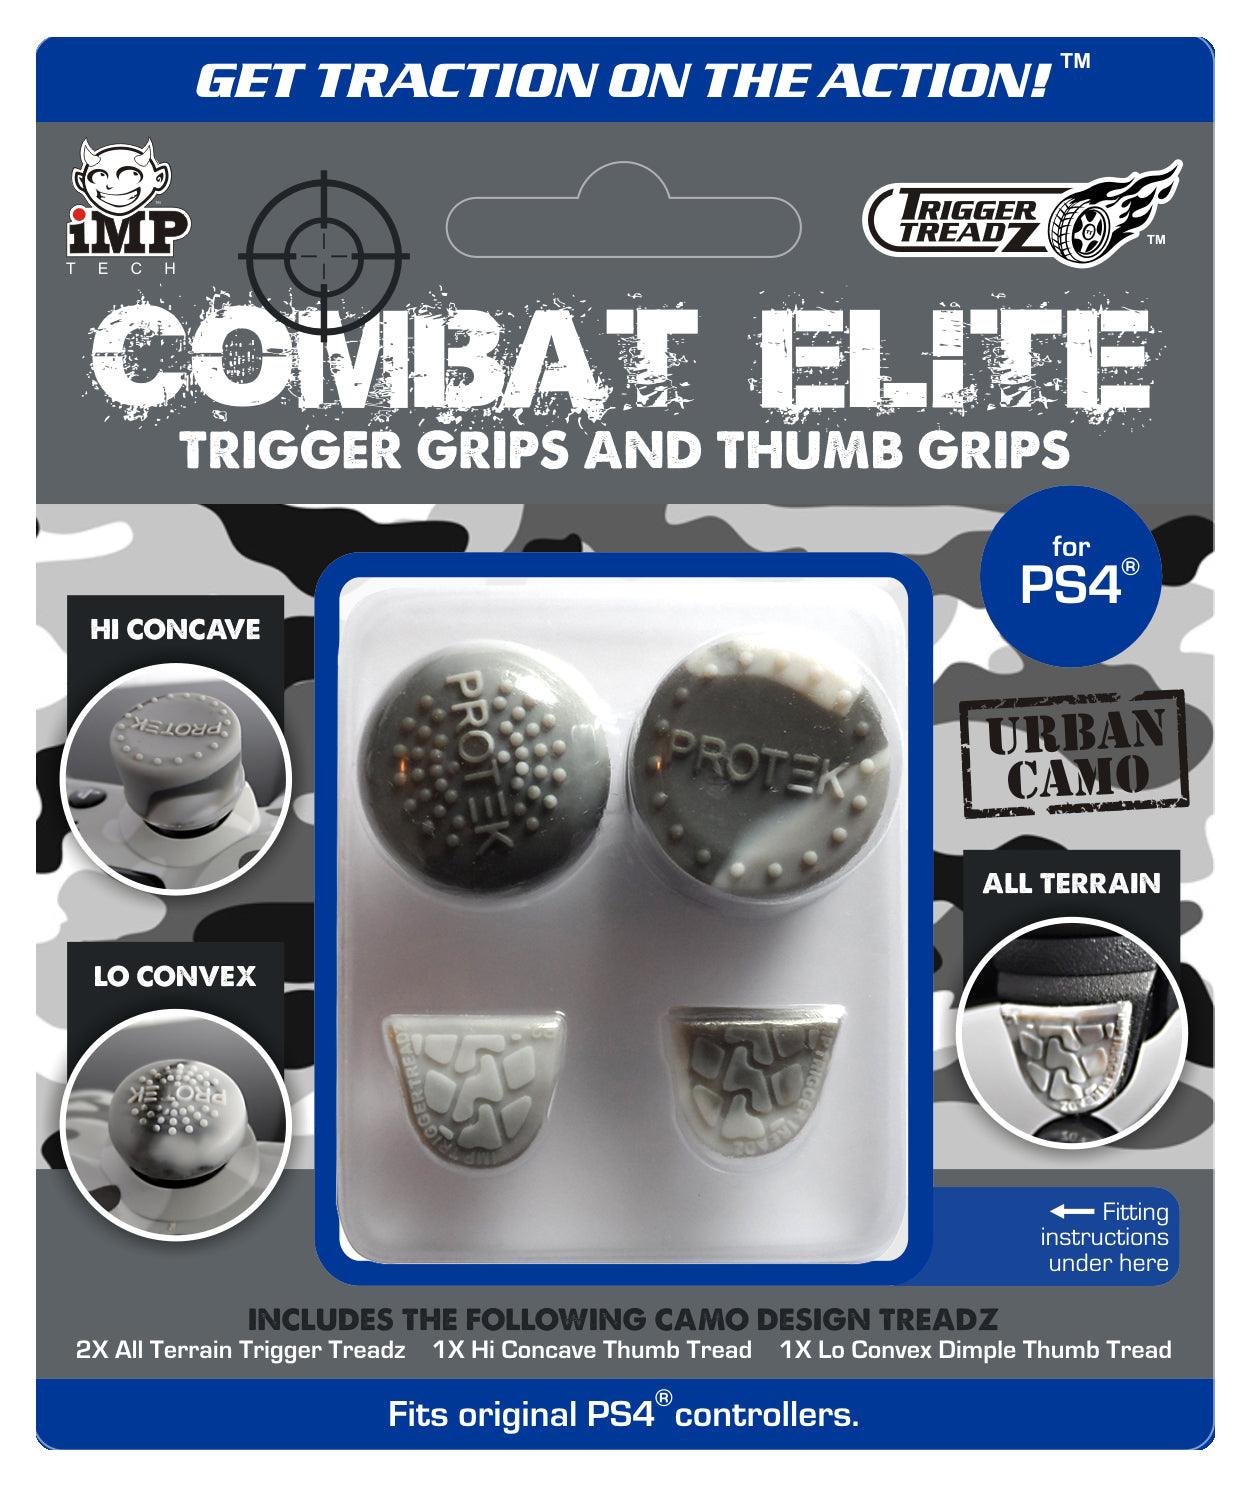 Combat Elite Thumb Pack X4 - Want a New Gadget